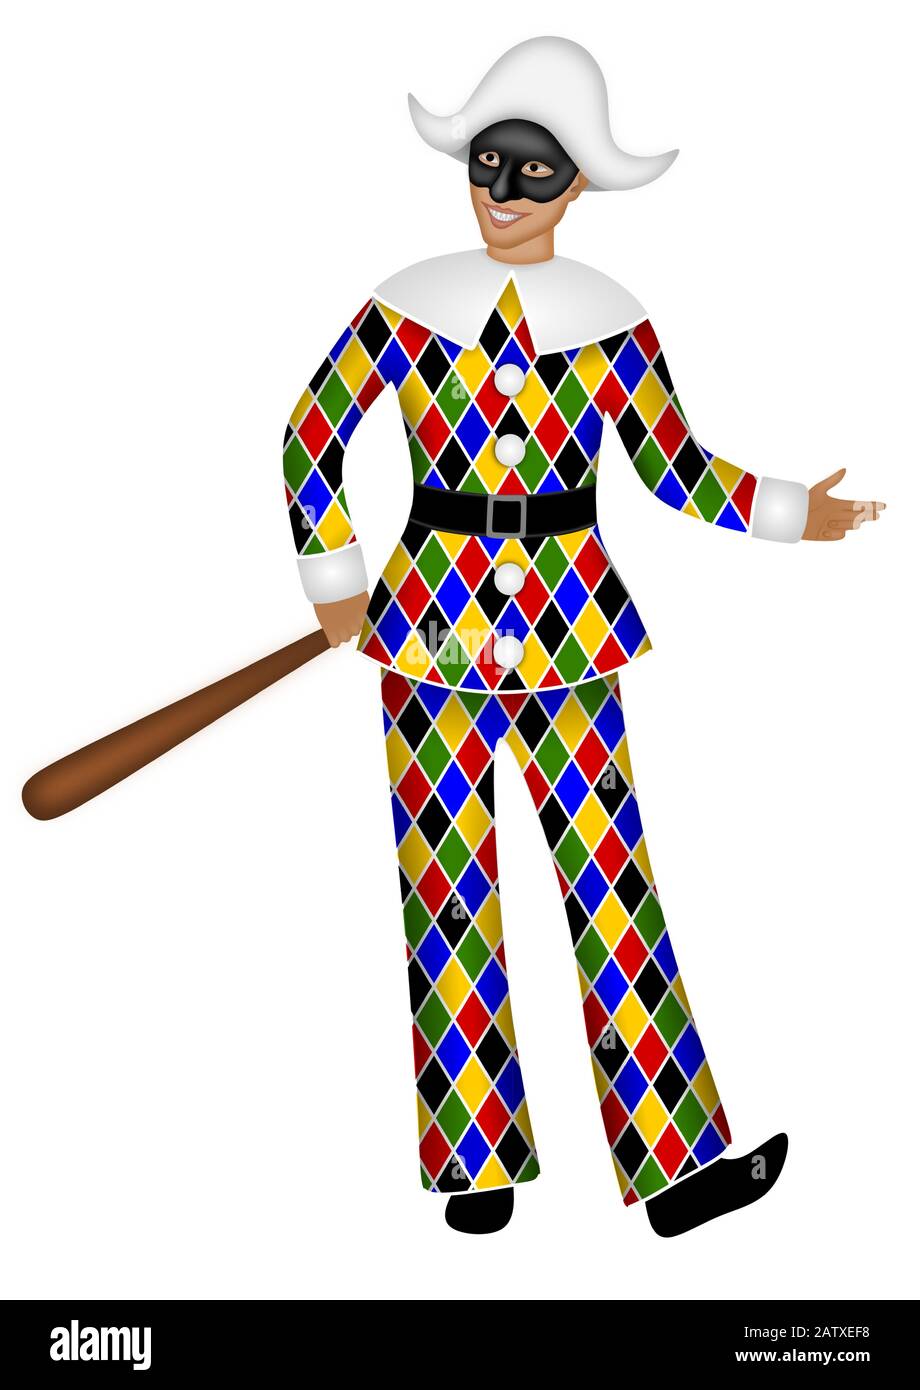 Masque italien traditionnel d'Arlecchino. Costume de carnaval coloré d'Arlequin Illustration de Vecteur